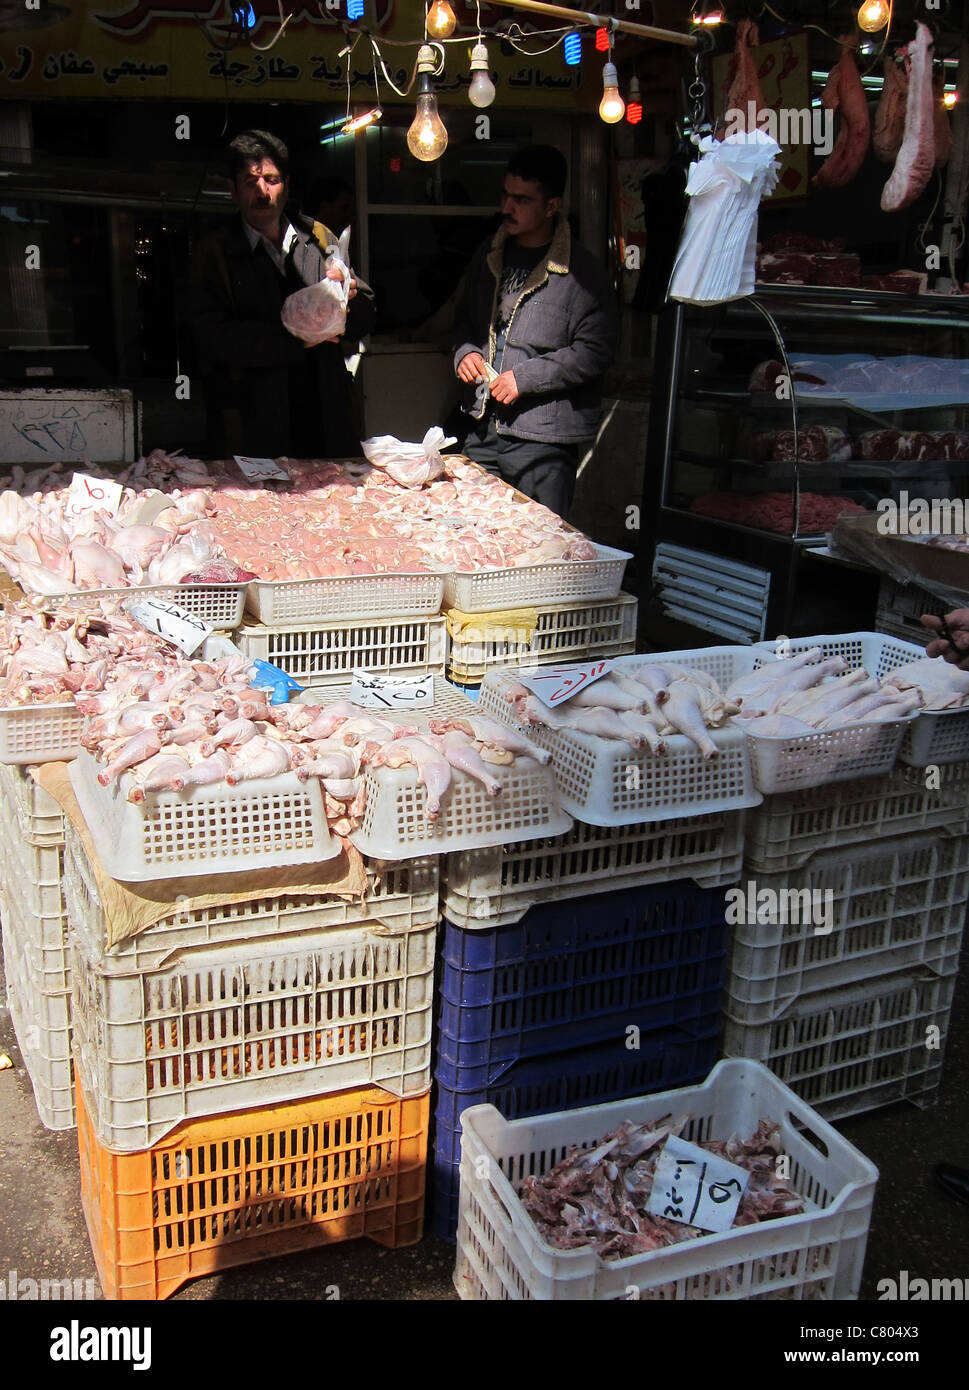 saler  street vendor in Damascus, Strassenverkäufer in Damaskus Syrien Syria chicken Hähnchen Stock Photo